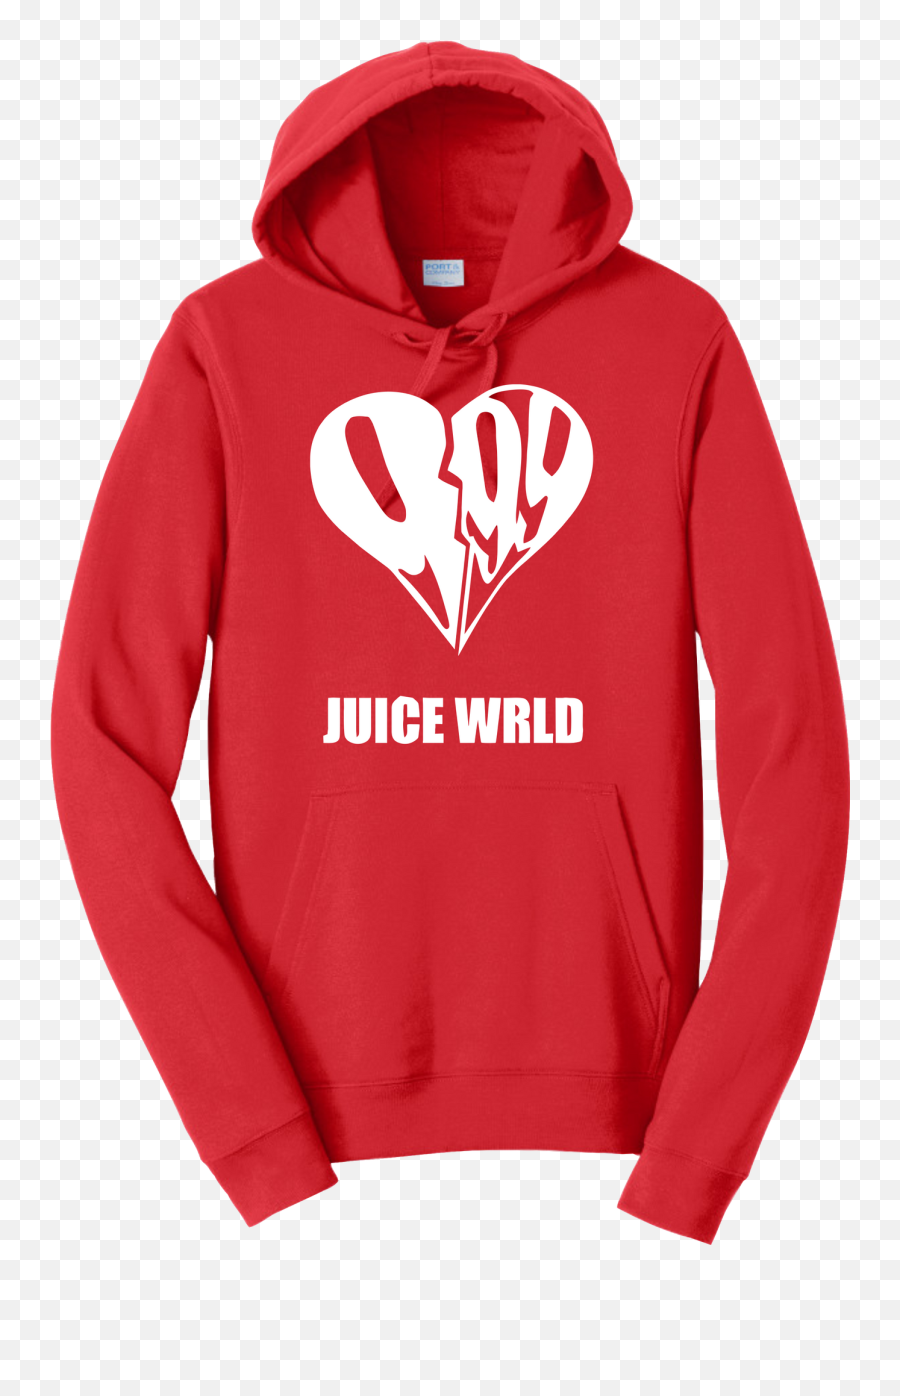 Juice Wrld Hoodie Rip 999 Heart Broken Sweatshirt Emoji,Broken Heart Logo